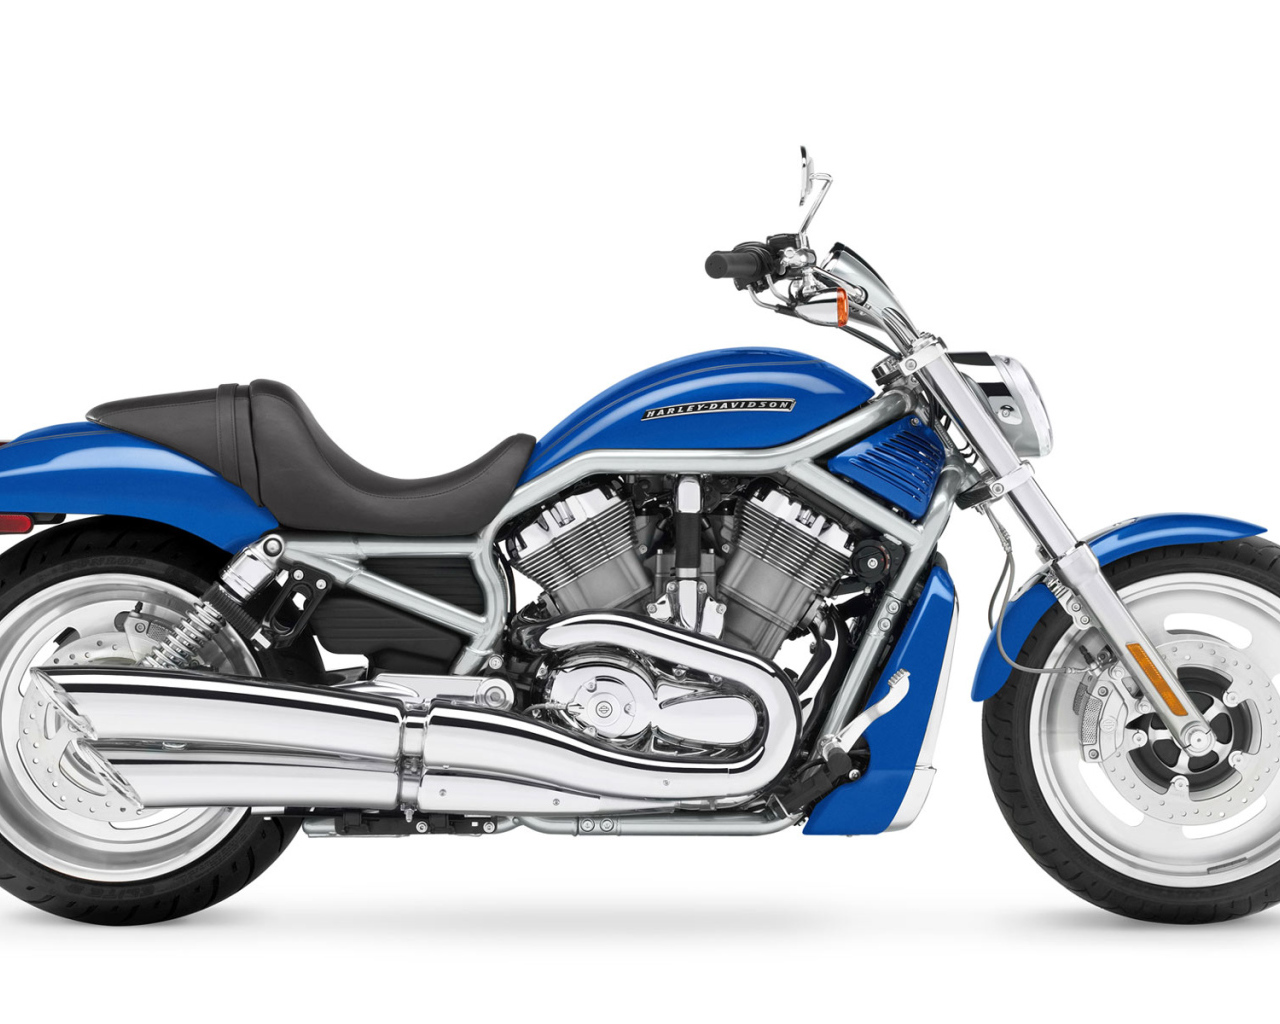 Harley Davidson Скорость мощность красота